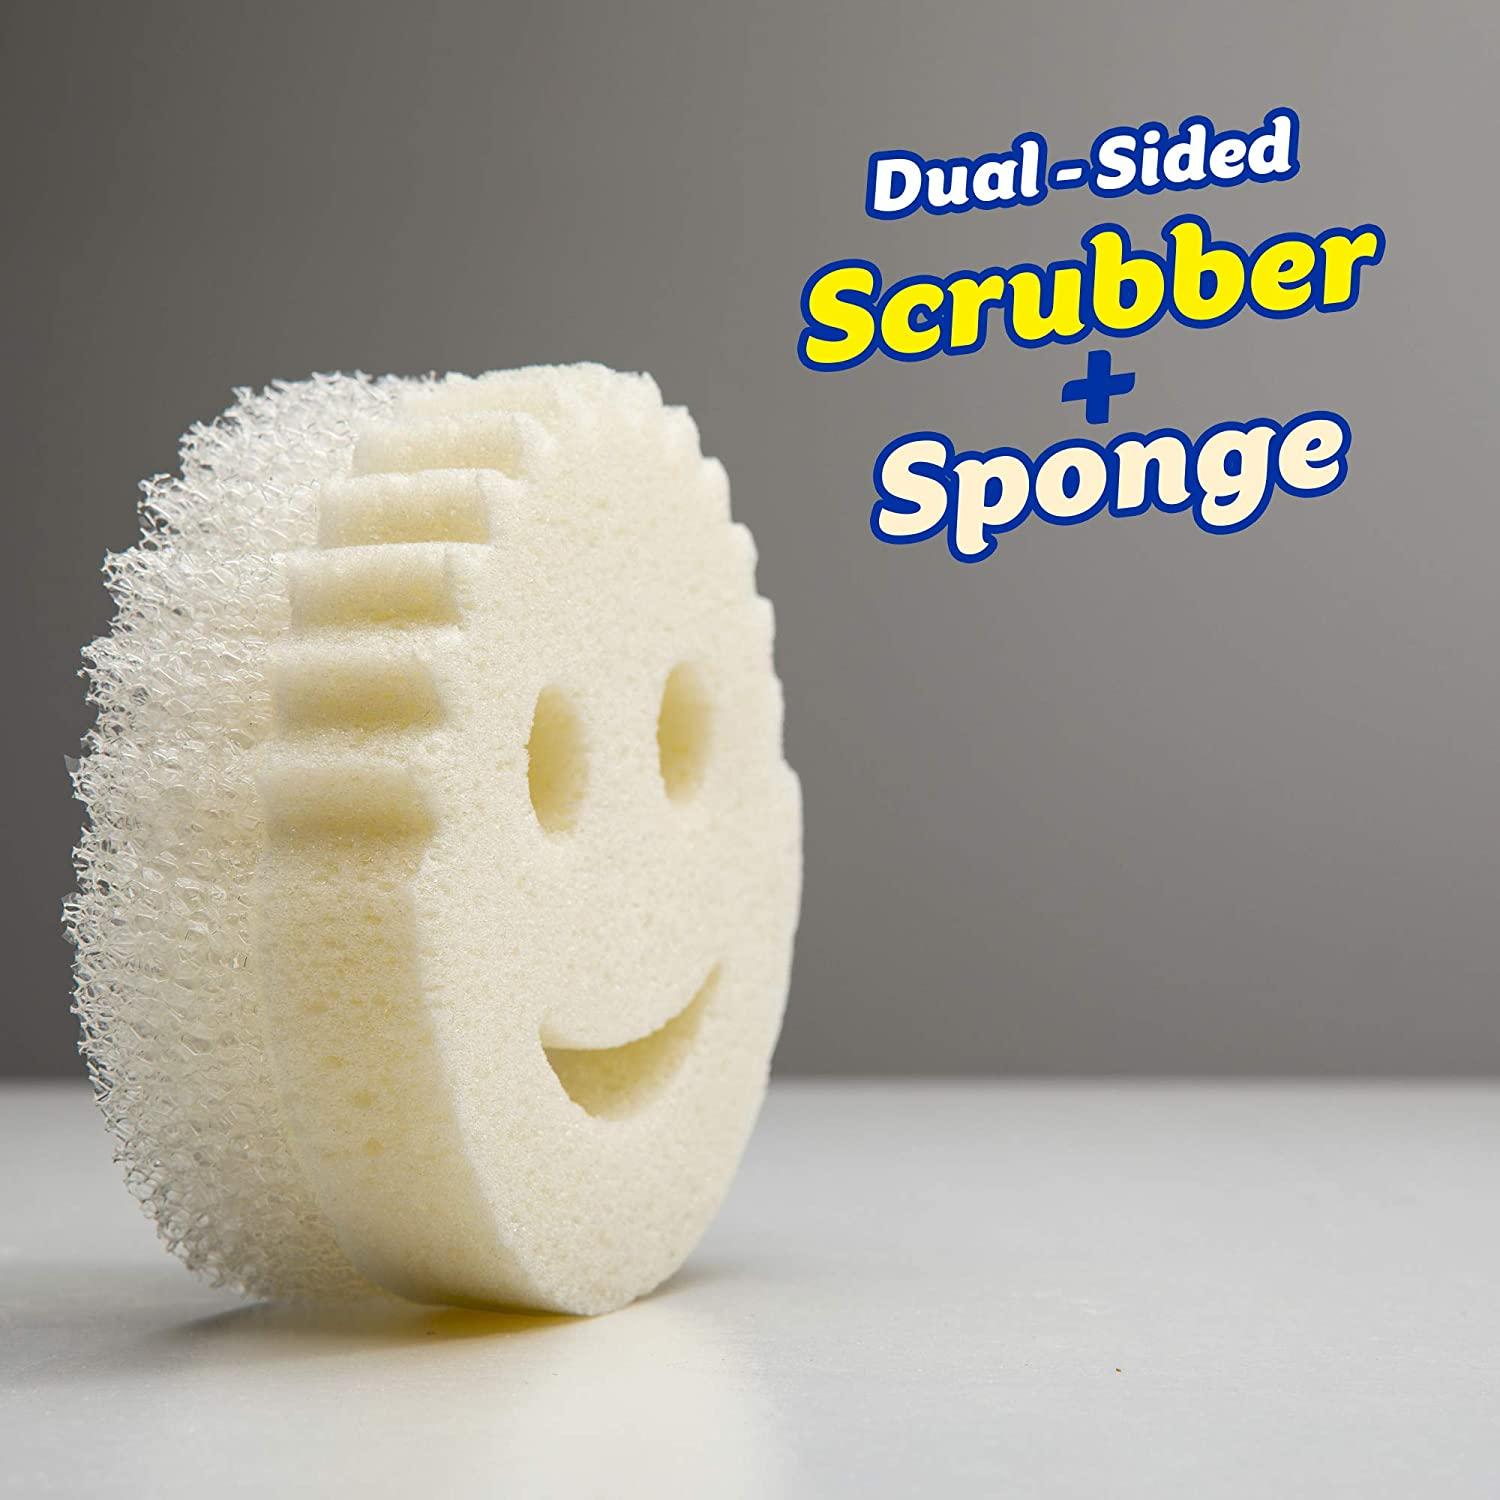 Scrub Daddy Scrub Mommy 1ct Polymer Foam Sponge in the Sponges